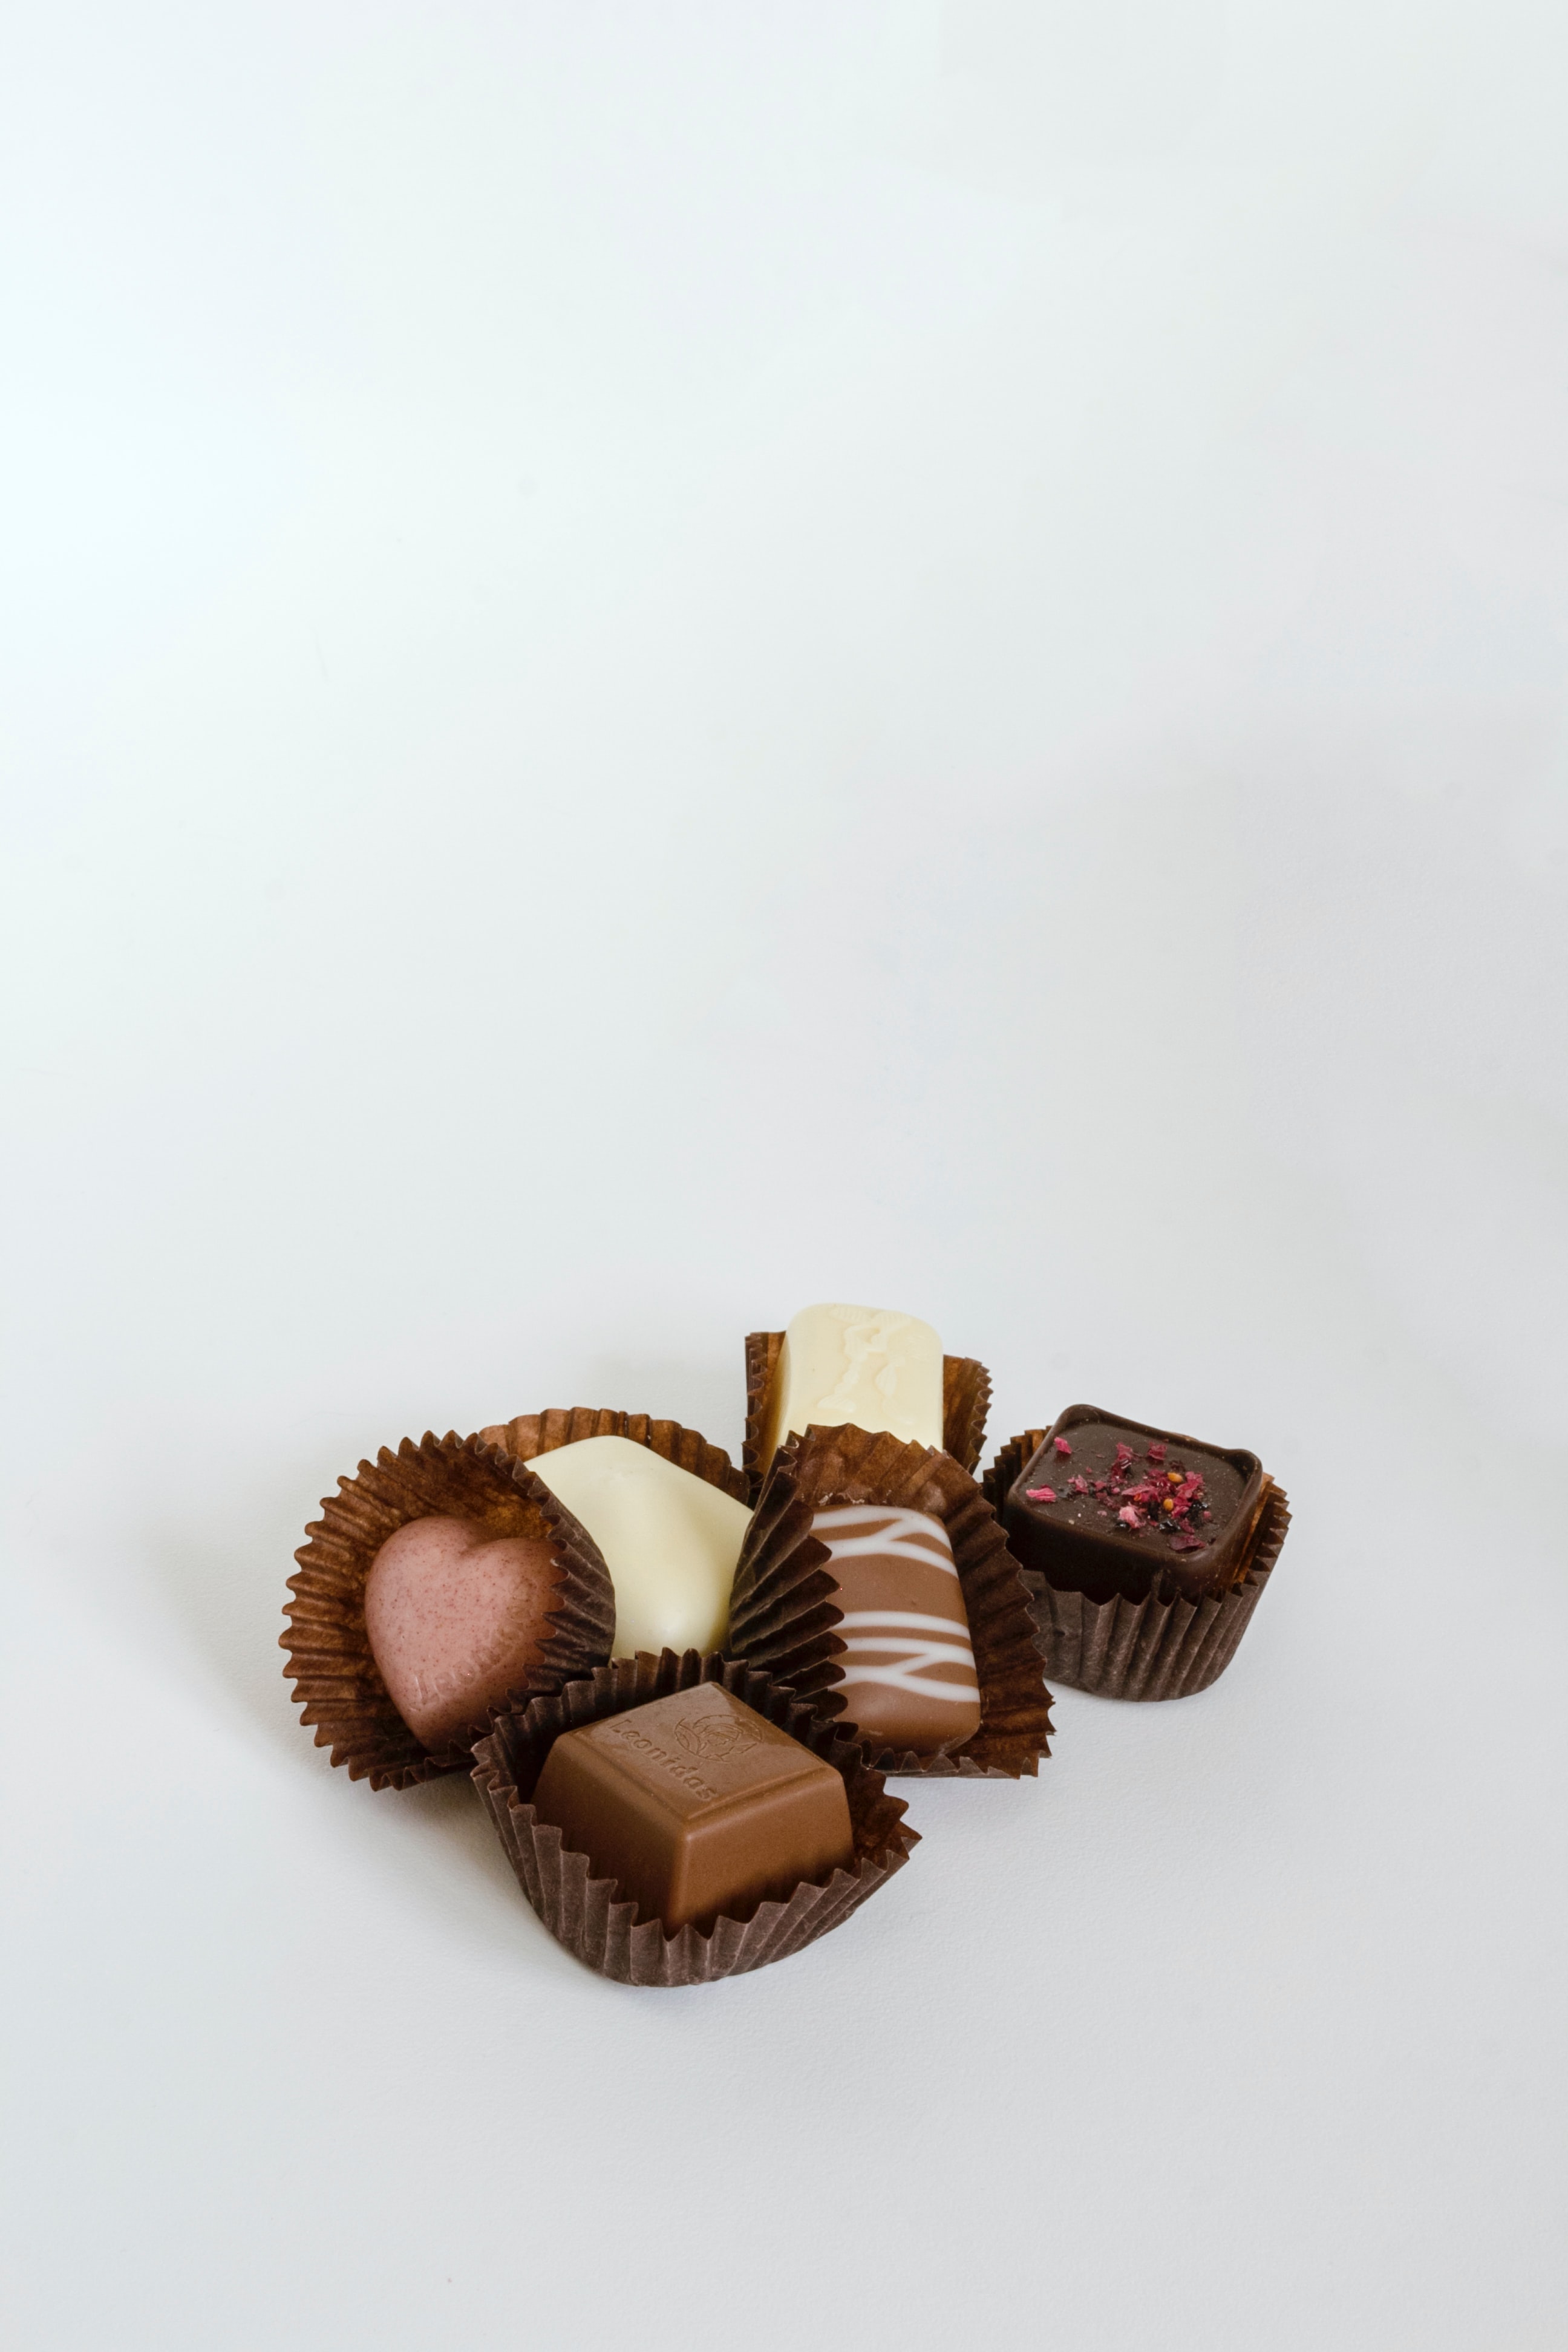 Çikolatanın Hafızaya etkisi var mı?